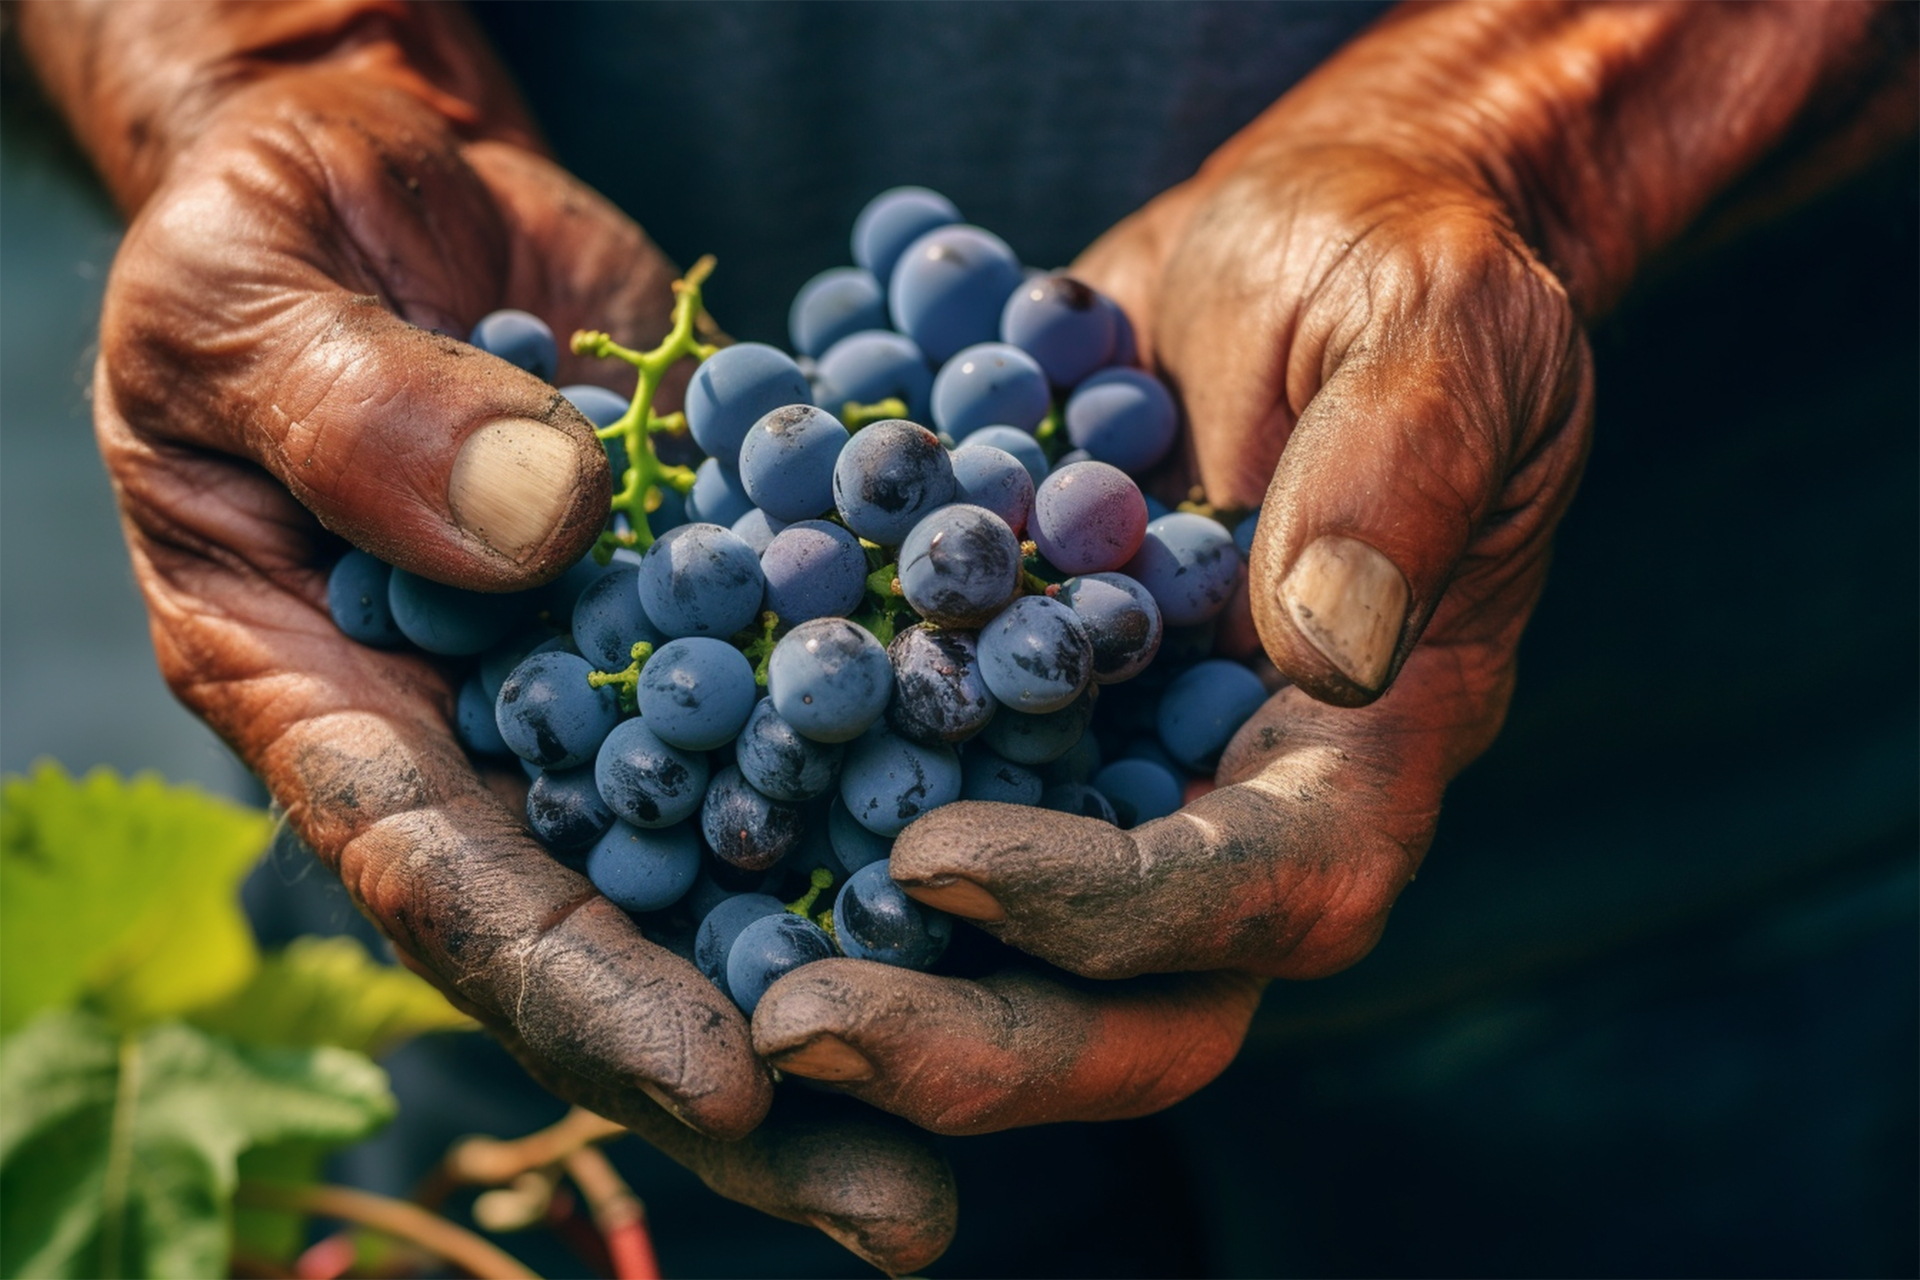 Na tym ujmującym obrazku widać delikatne kiście winogron trzymane w dłoniach, emanujące soczystym kolorem i obfitością owoców. Ich kuliste i soczyste jagody prezentują się apetycznie, zachęcając do ich spożycia. Obrazek oddaje bogactwo i piękno winogron, które są nie tylko smaczne, ale także pełne wartości odżywczych